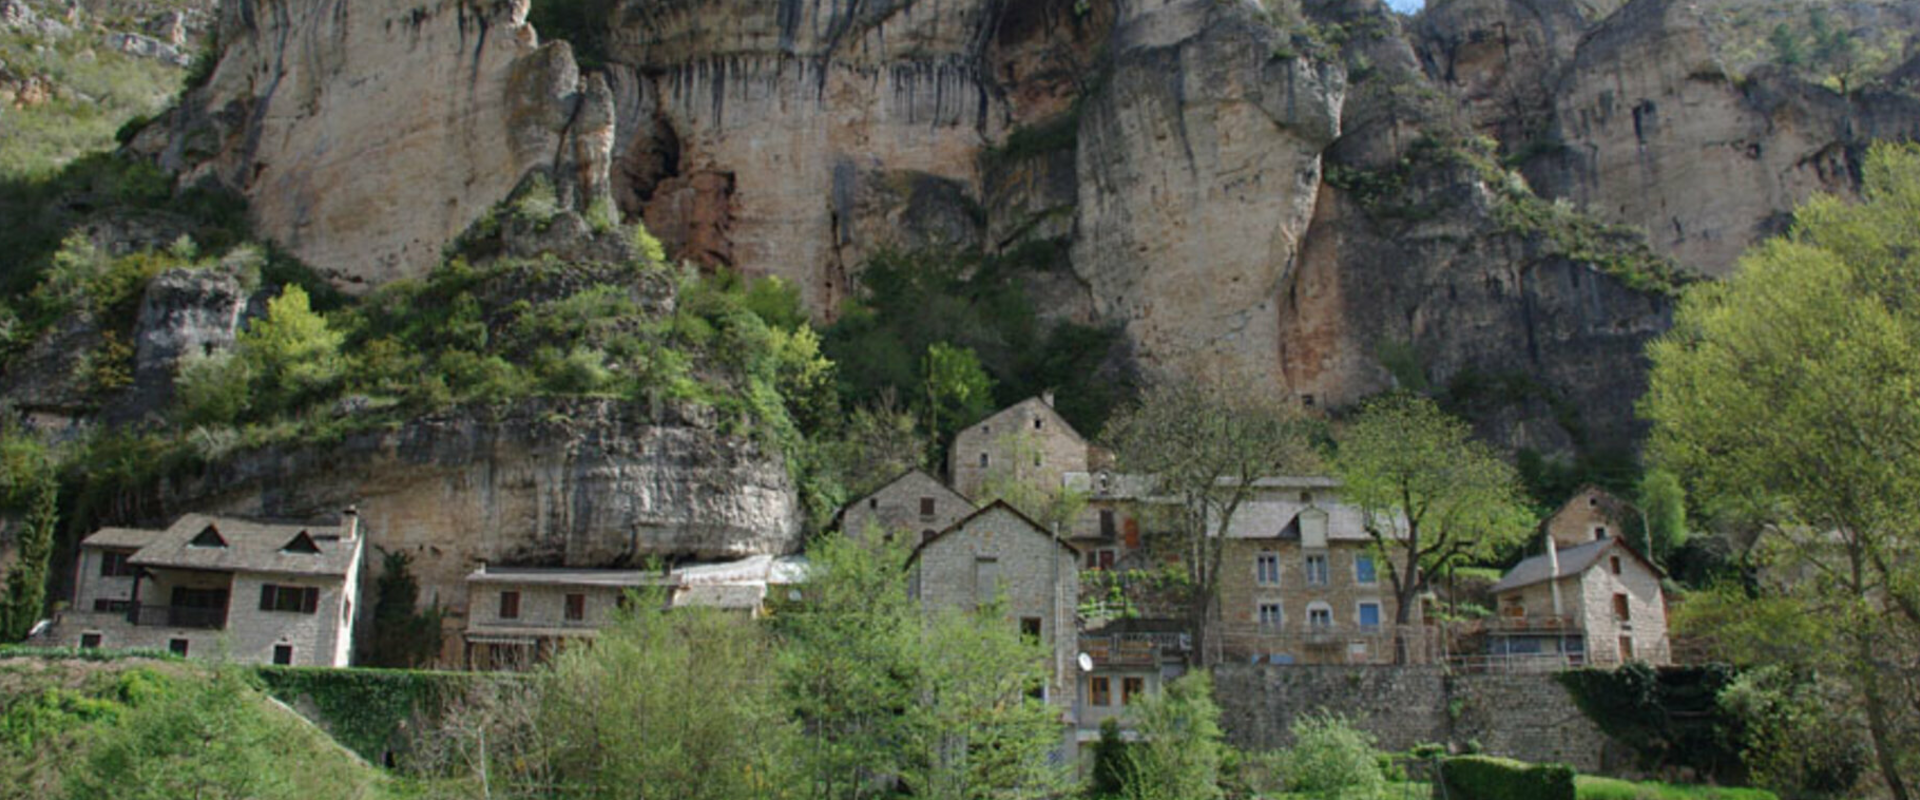 Commune des Gorges du Tarn Causses - Le hameau de Pougnadoires